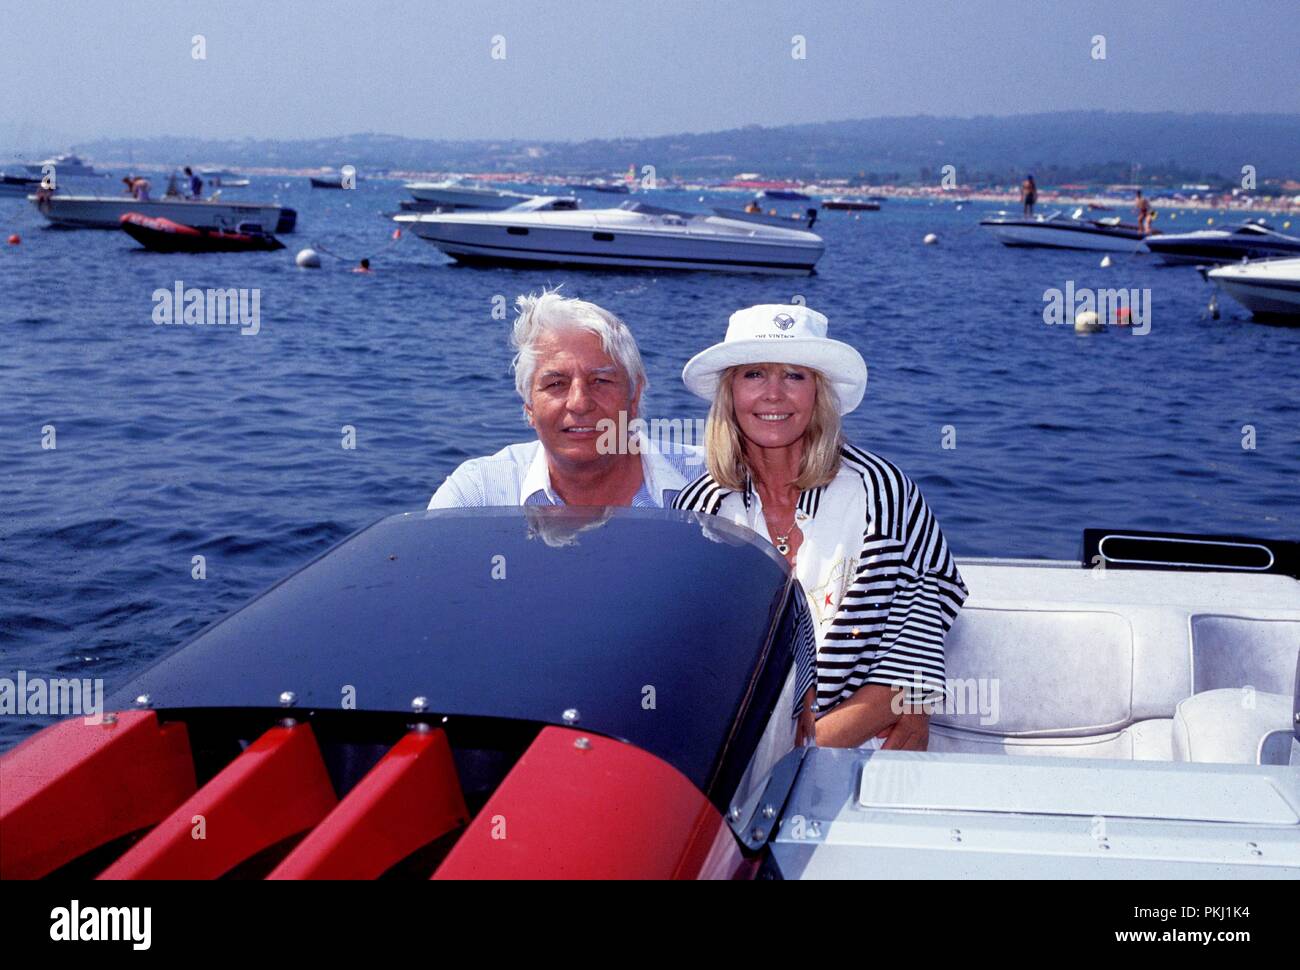 Gunter Sachs mit Ehefrau Mirja beim Bootfahren vor St. Tropez, Frankreich 2000er Jahre. Gunter Sachs with his wife Mirja in a motorboat near St. Tropez, France 2000s. Stock Photo